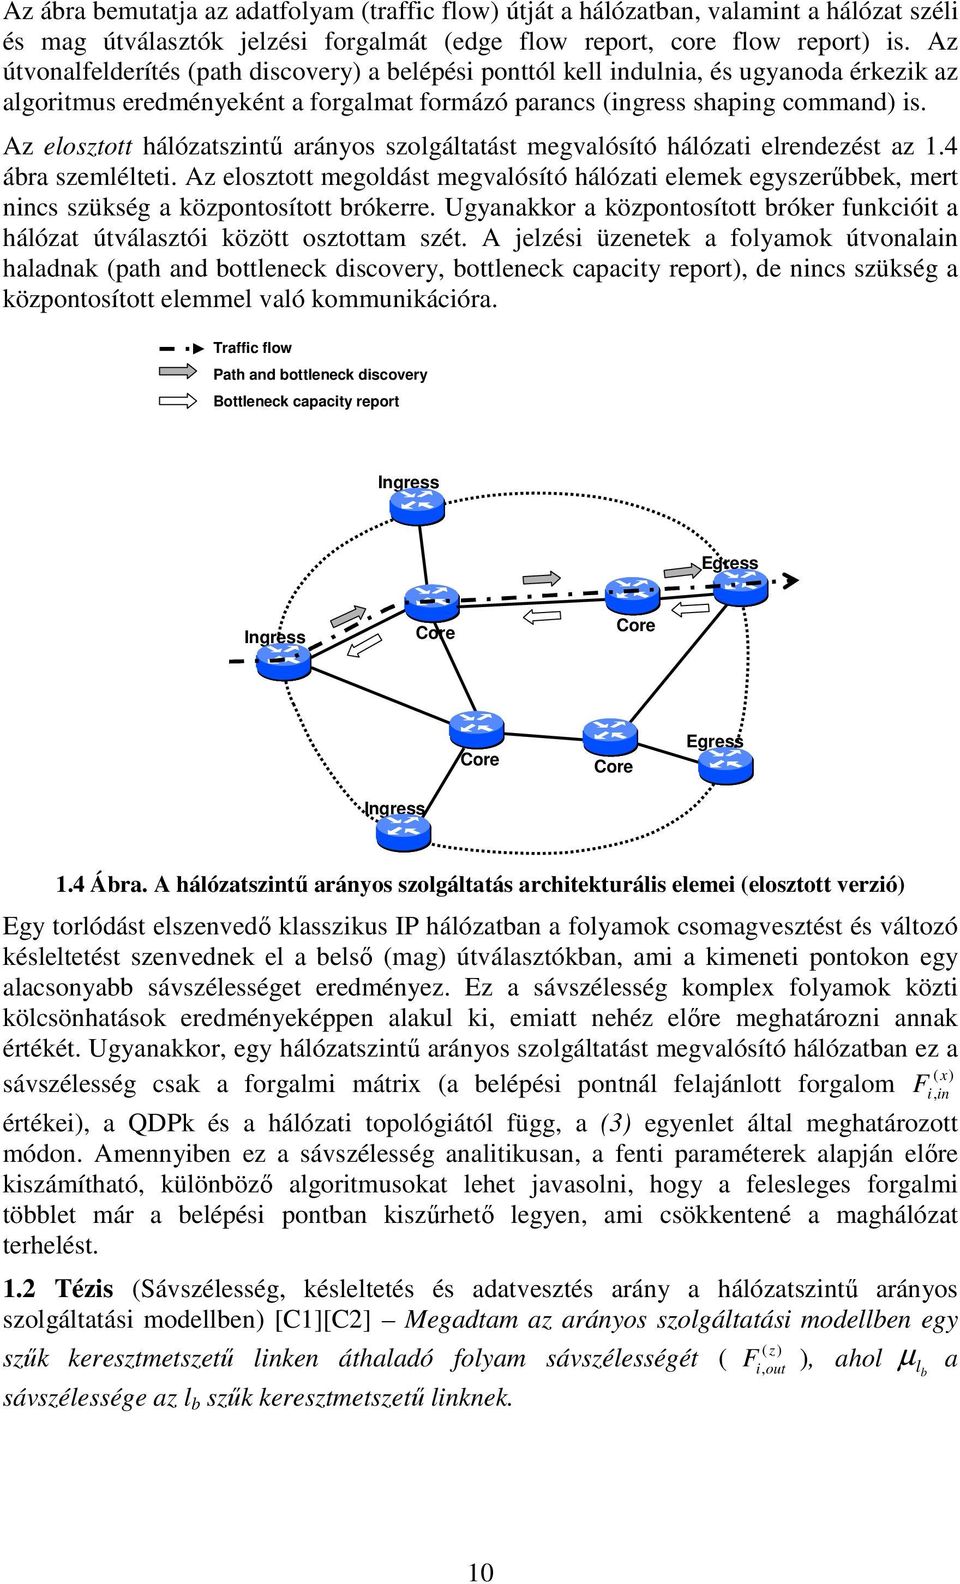 Az elosztott hálózatszntű arányos szolgáltatást megvalósító hálózat elrendezést az 1.4 ábra szemléltet.